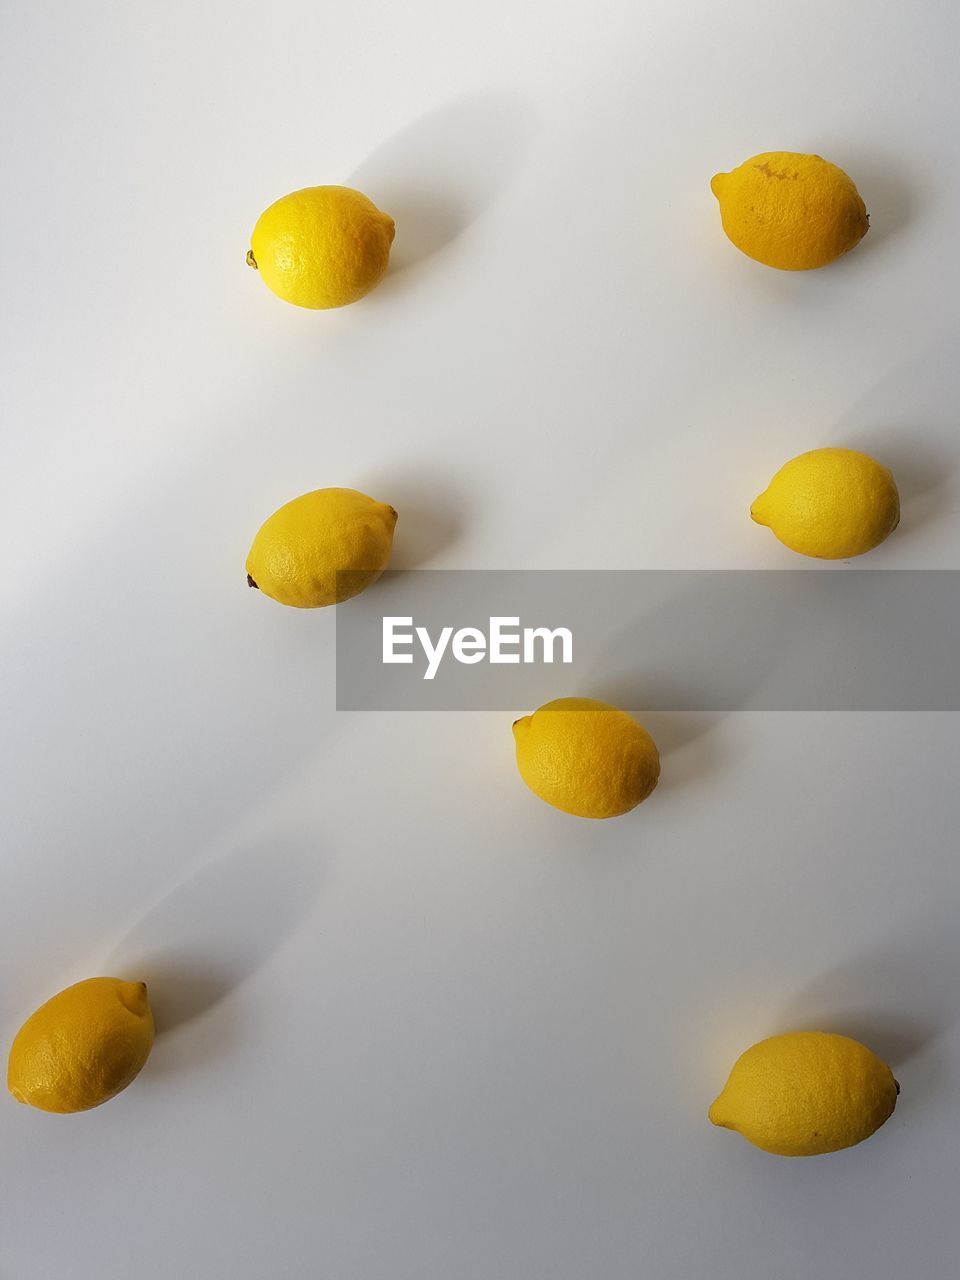 Close-up of lemons on white background